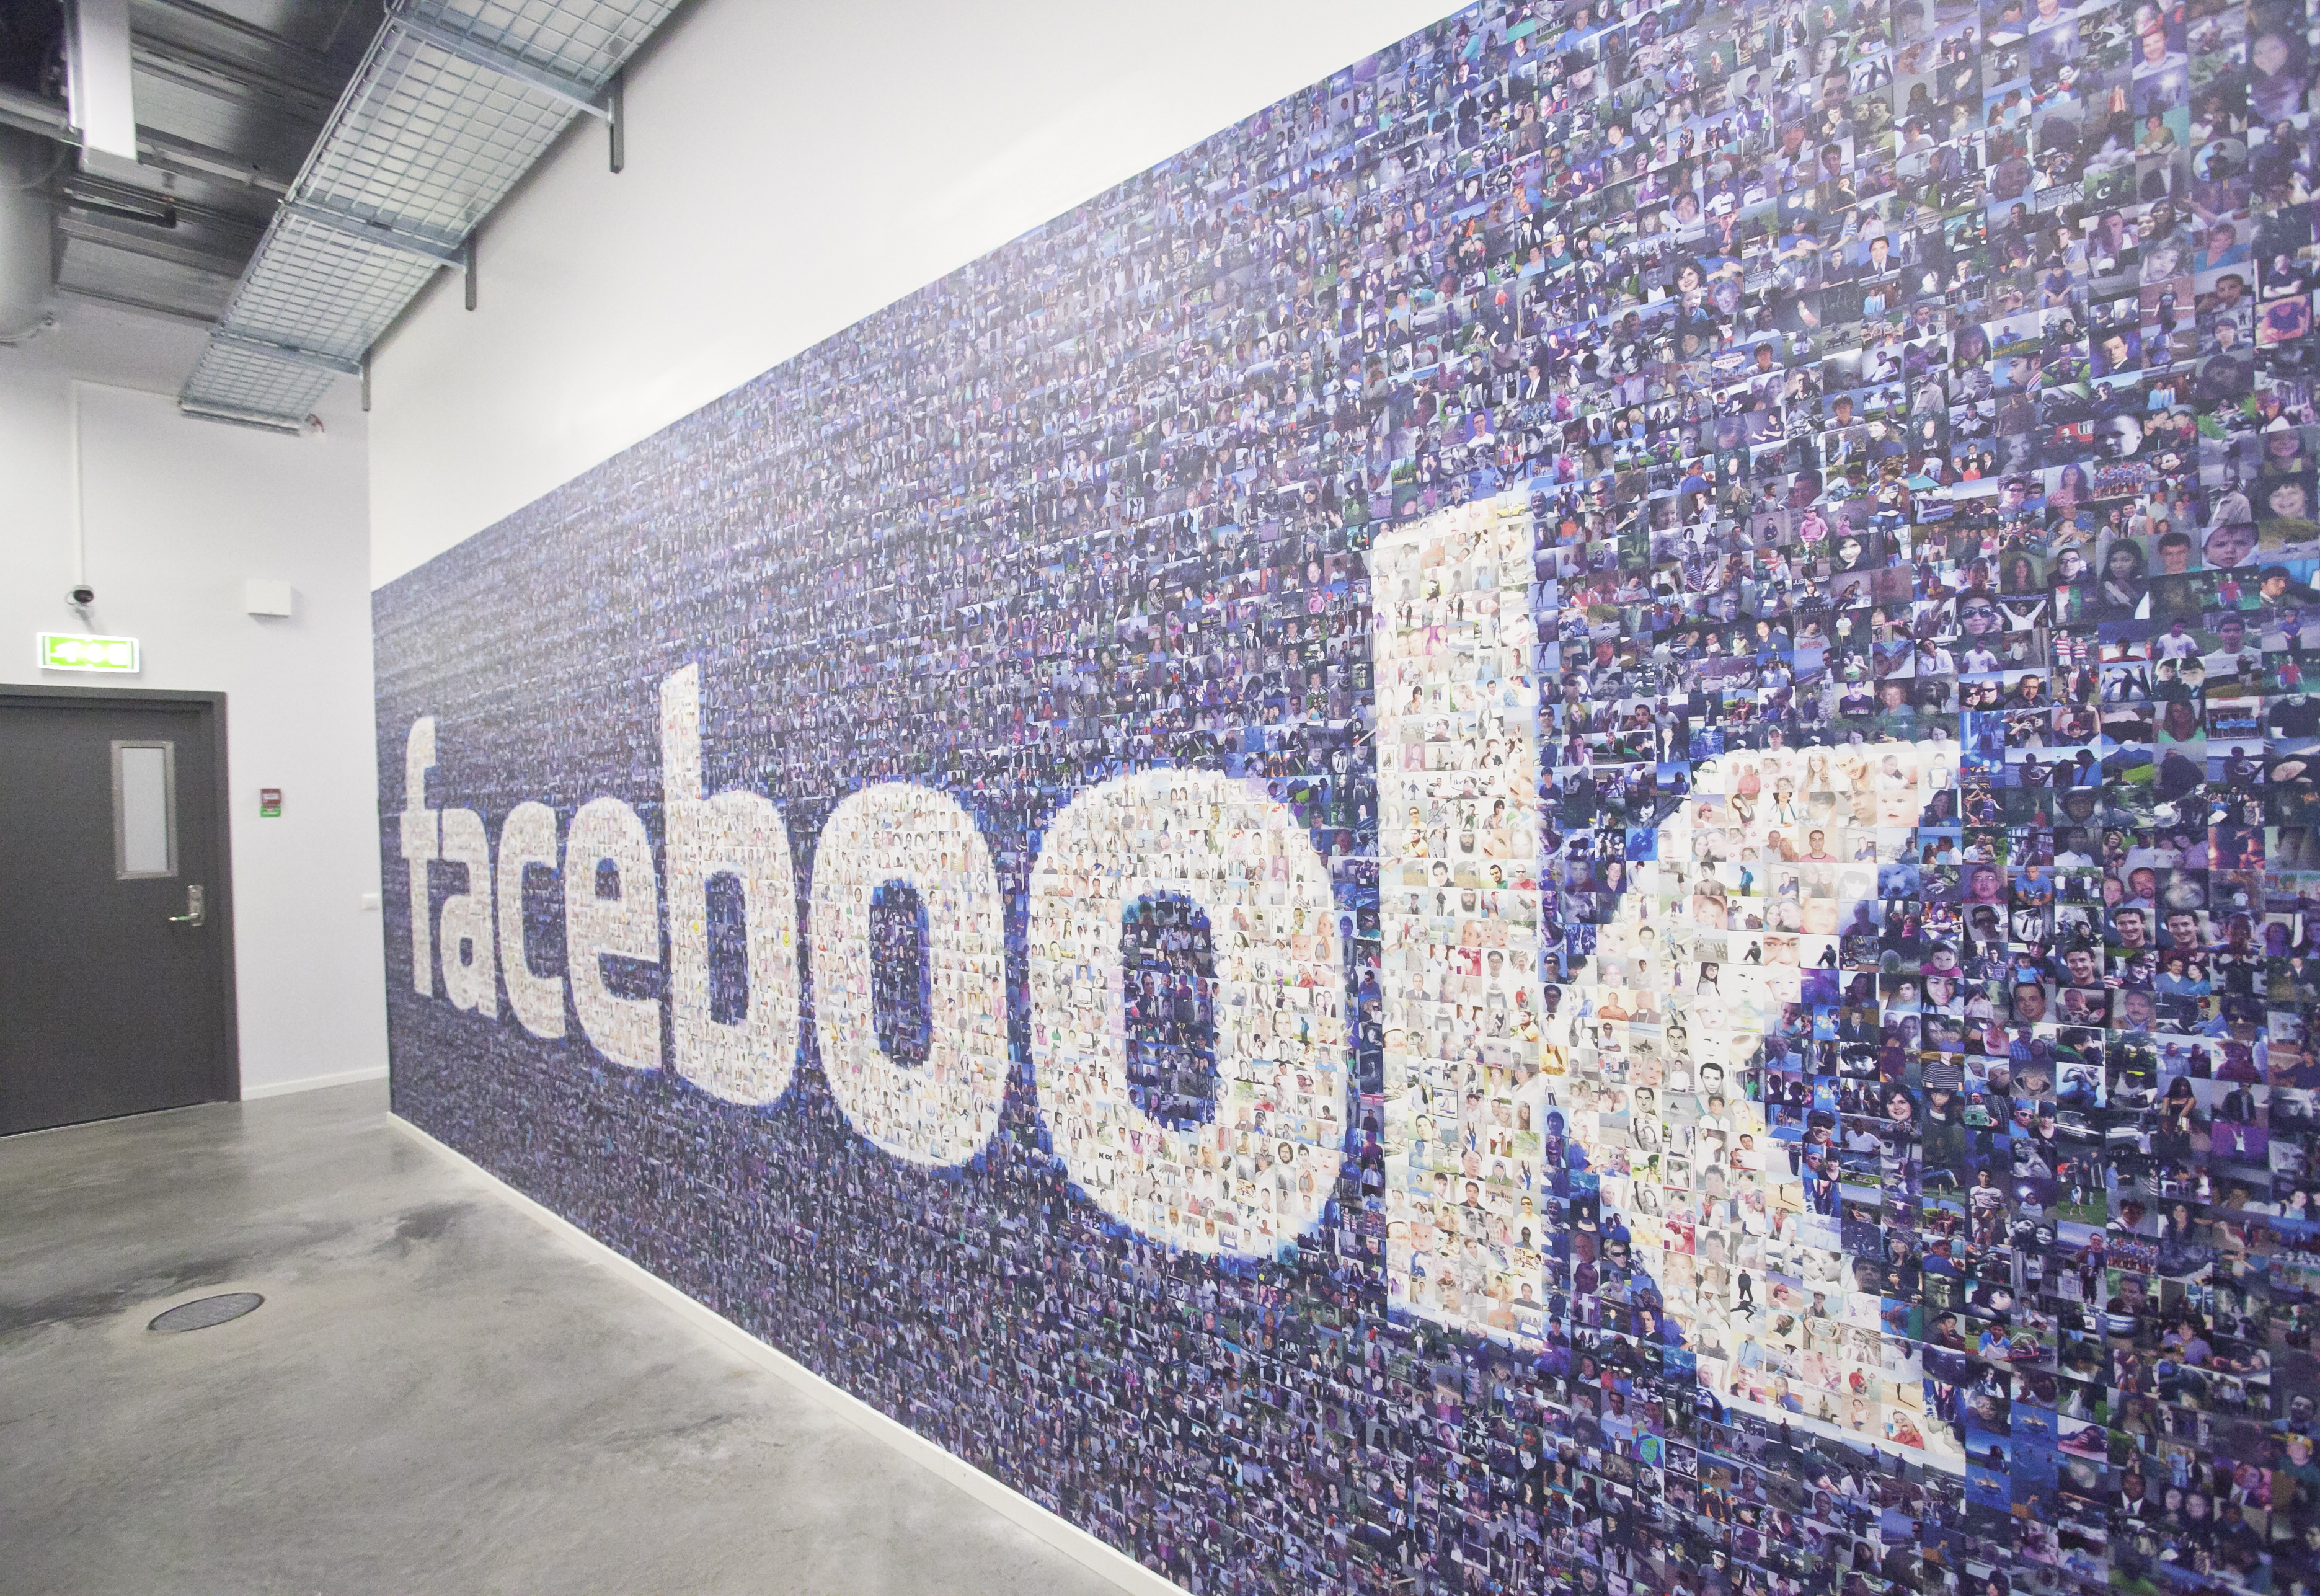 Facebook vill komma nära sin användare.